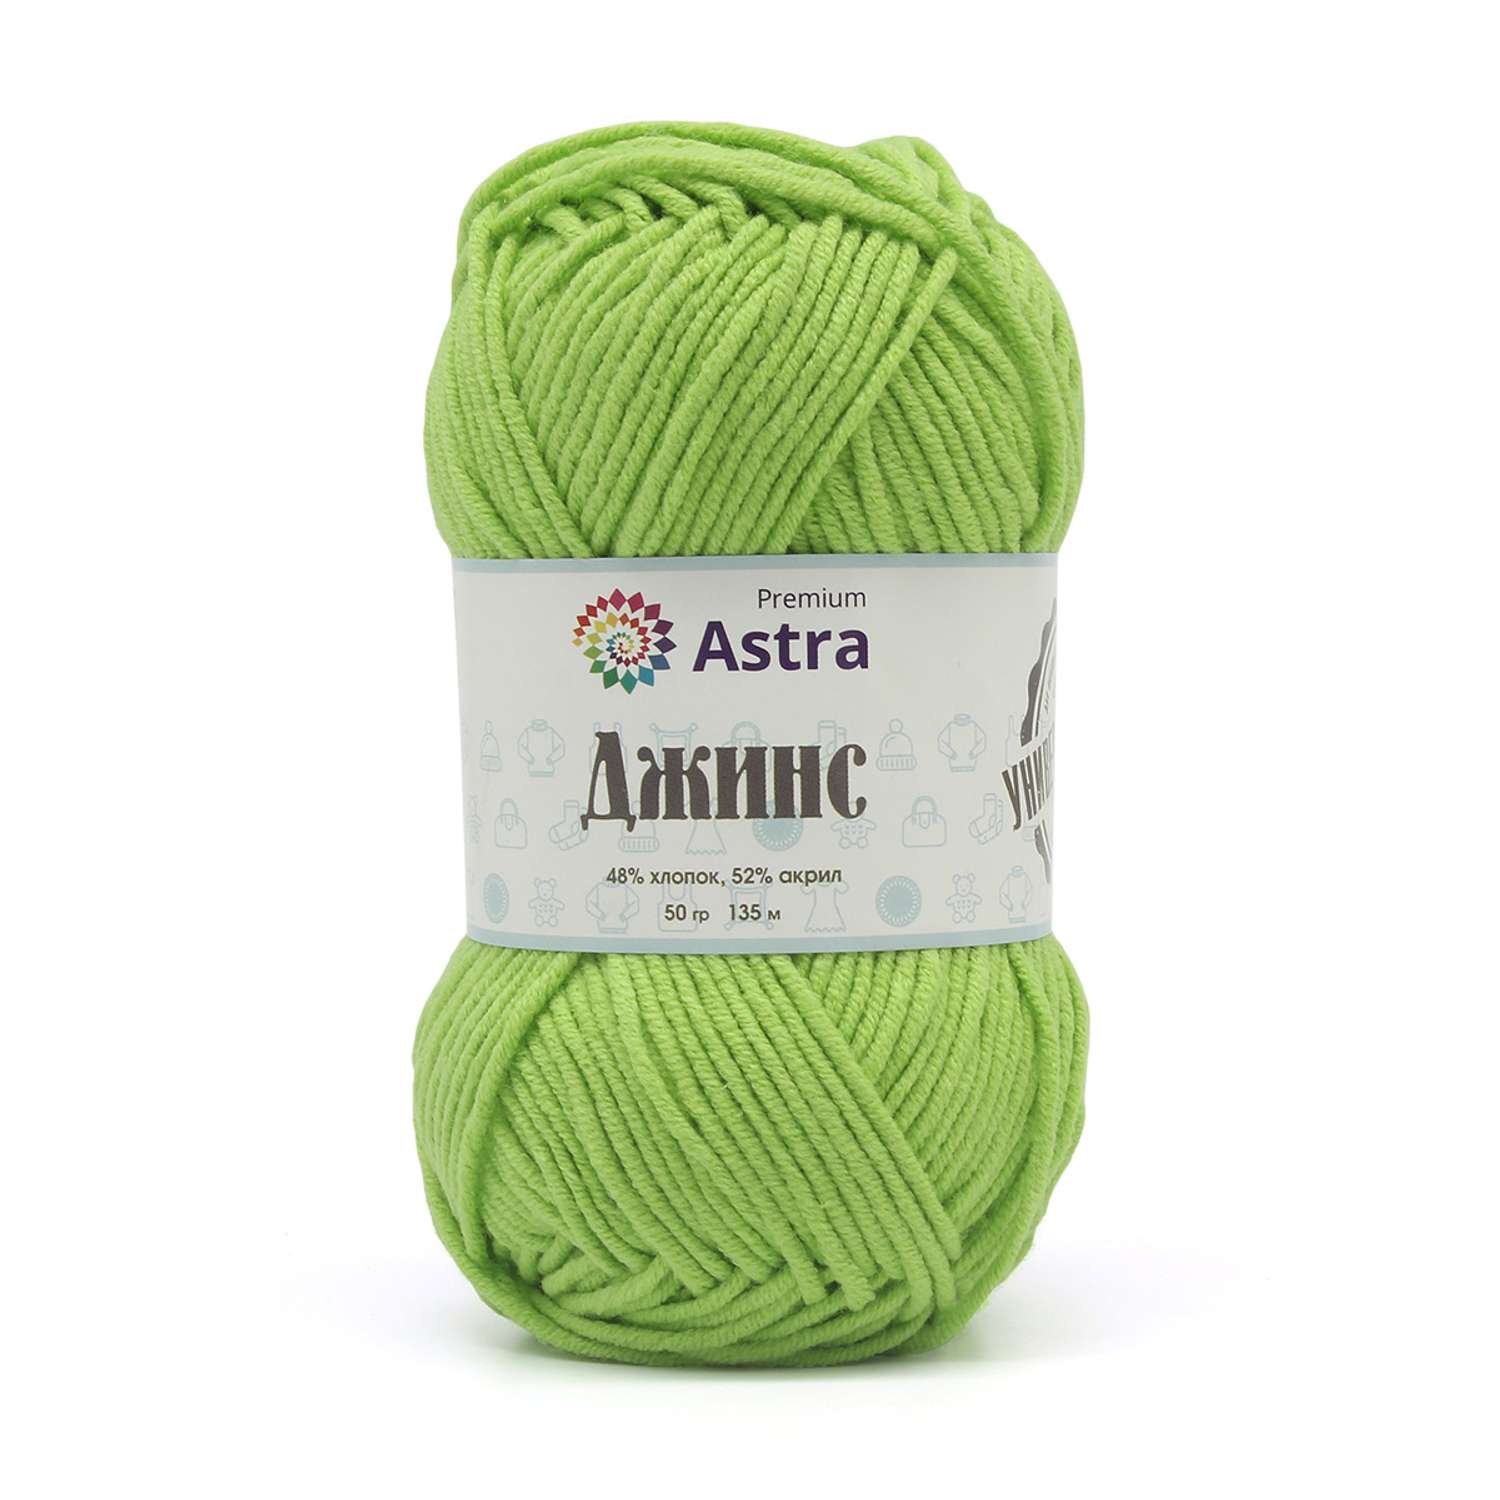 Пряжа для вязания Astra Premium джинс для повседневной одежды акрил хлопок 50 гр 135 м 450 зеленый 4 мотка - фото 10